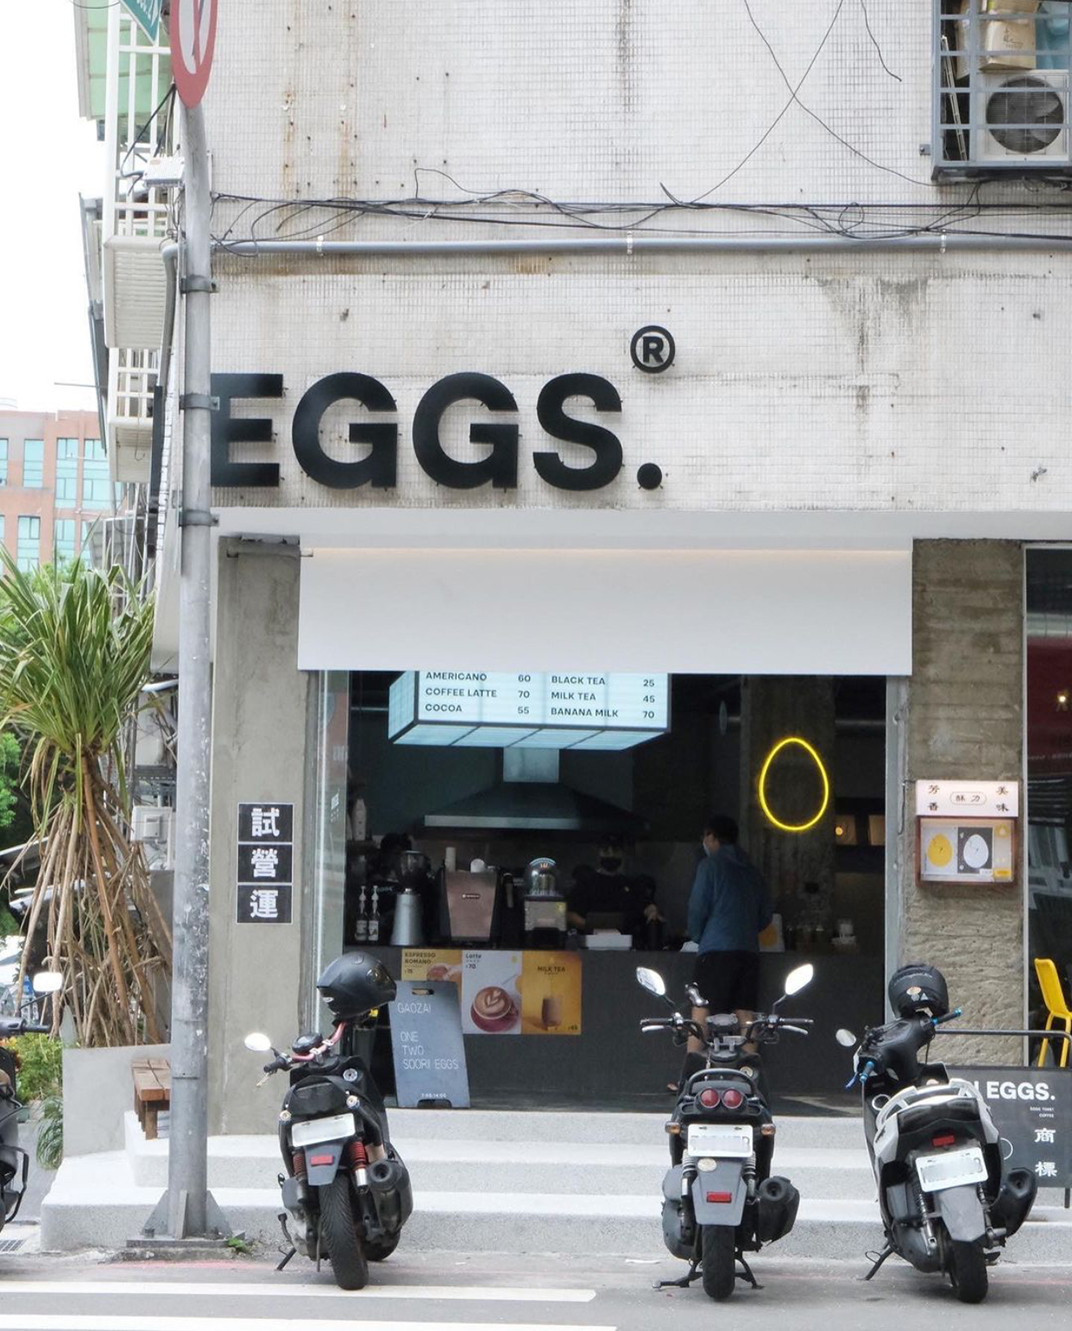 早午餐餐厅SOORI EGGS 台湾 黄色 水泥 工业风 Loft logo设计 vi设计 空间设计